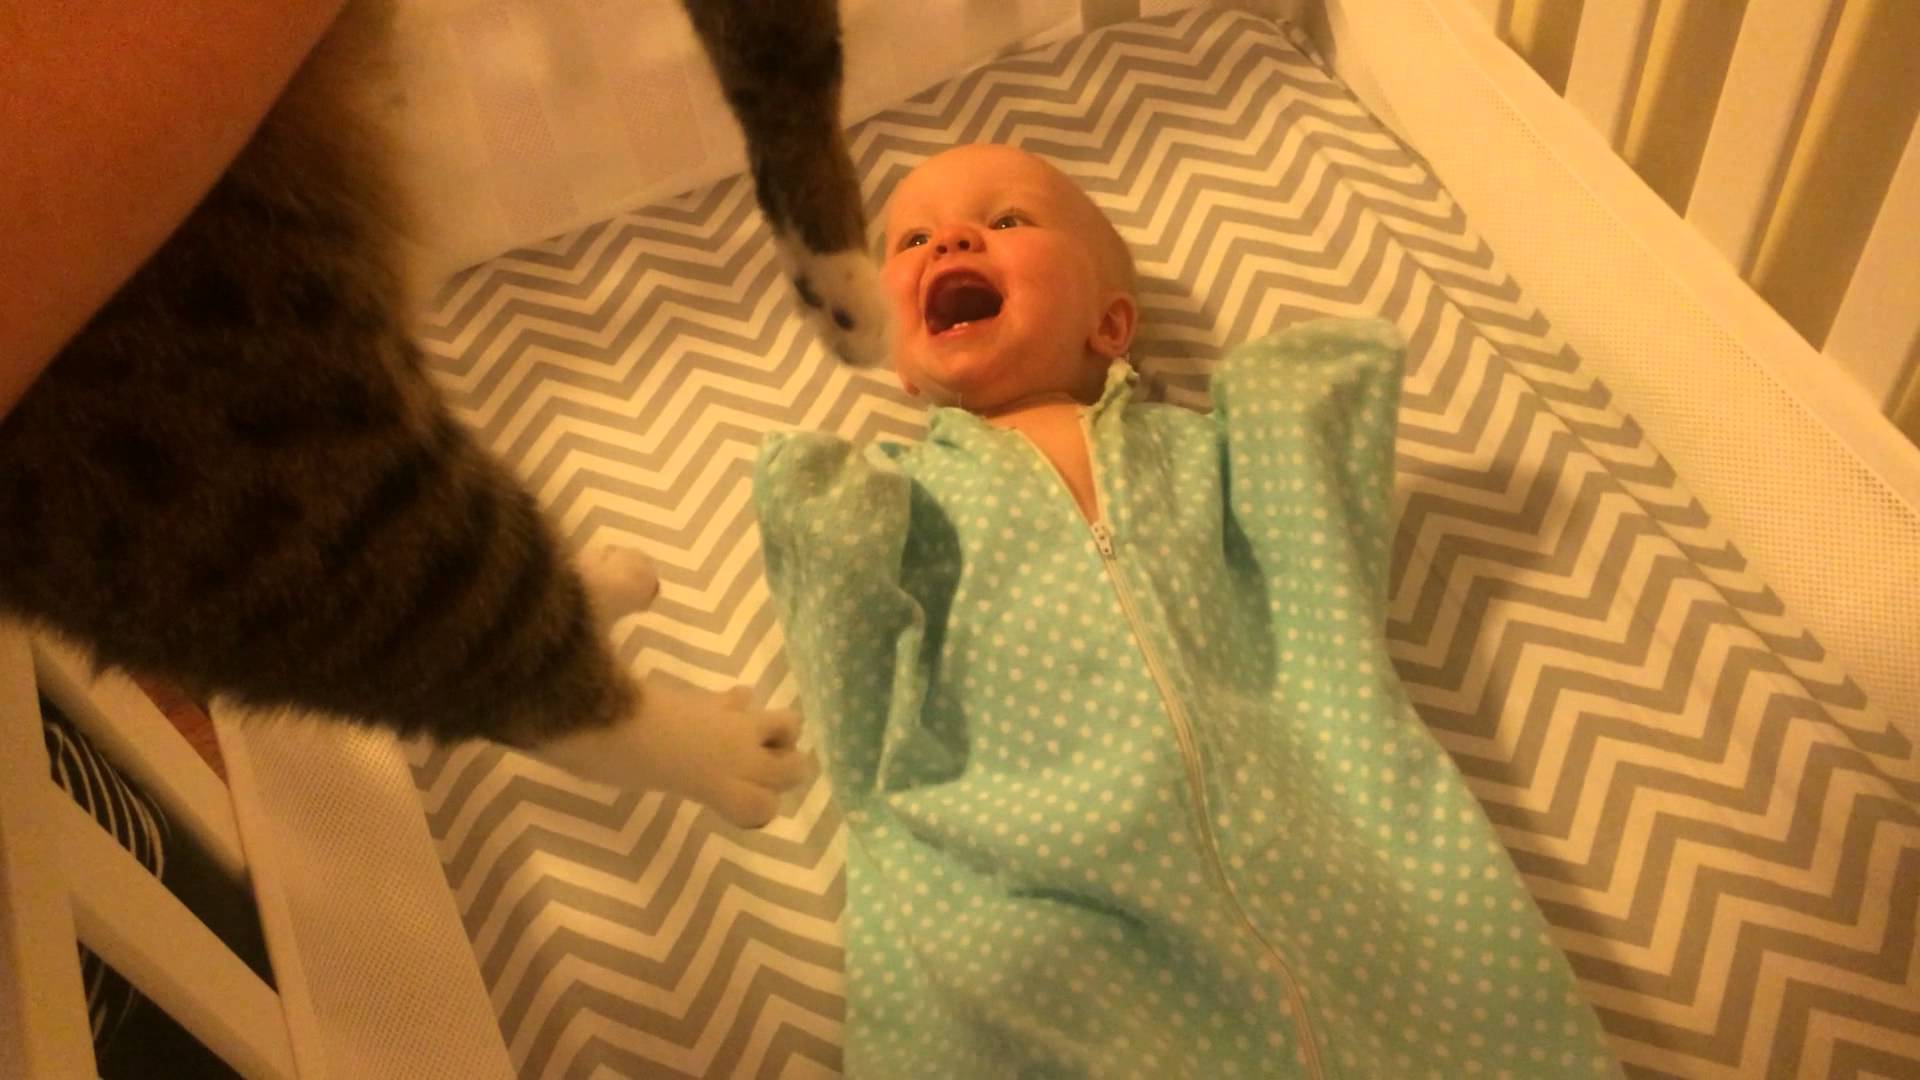 ردّ عفوي لرضيع يرى قطة لأول مرة